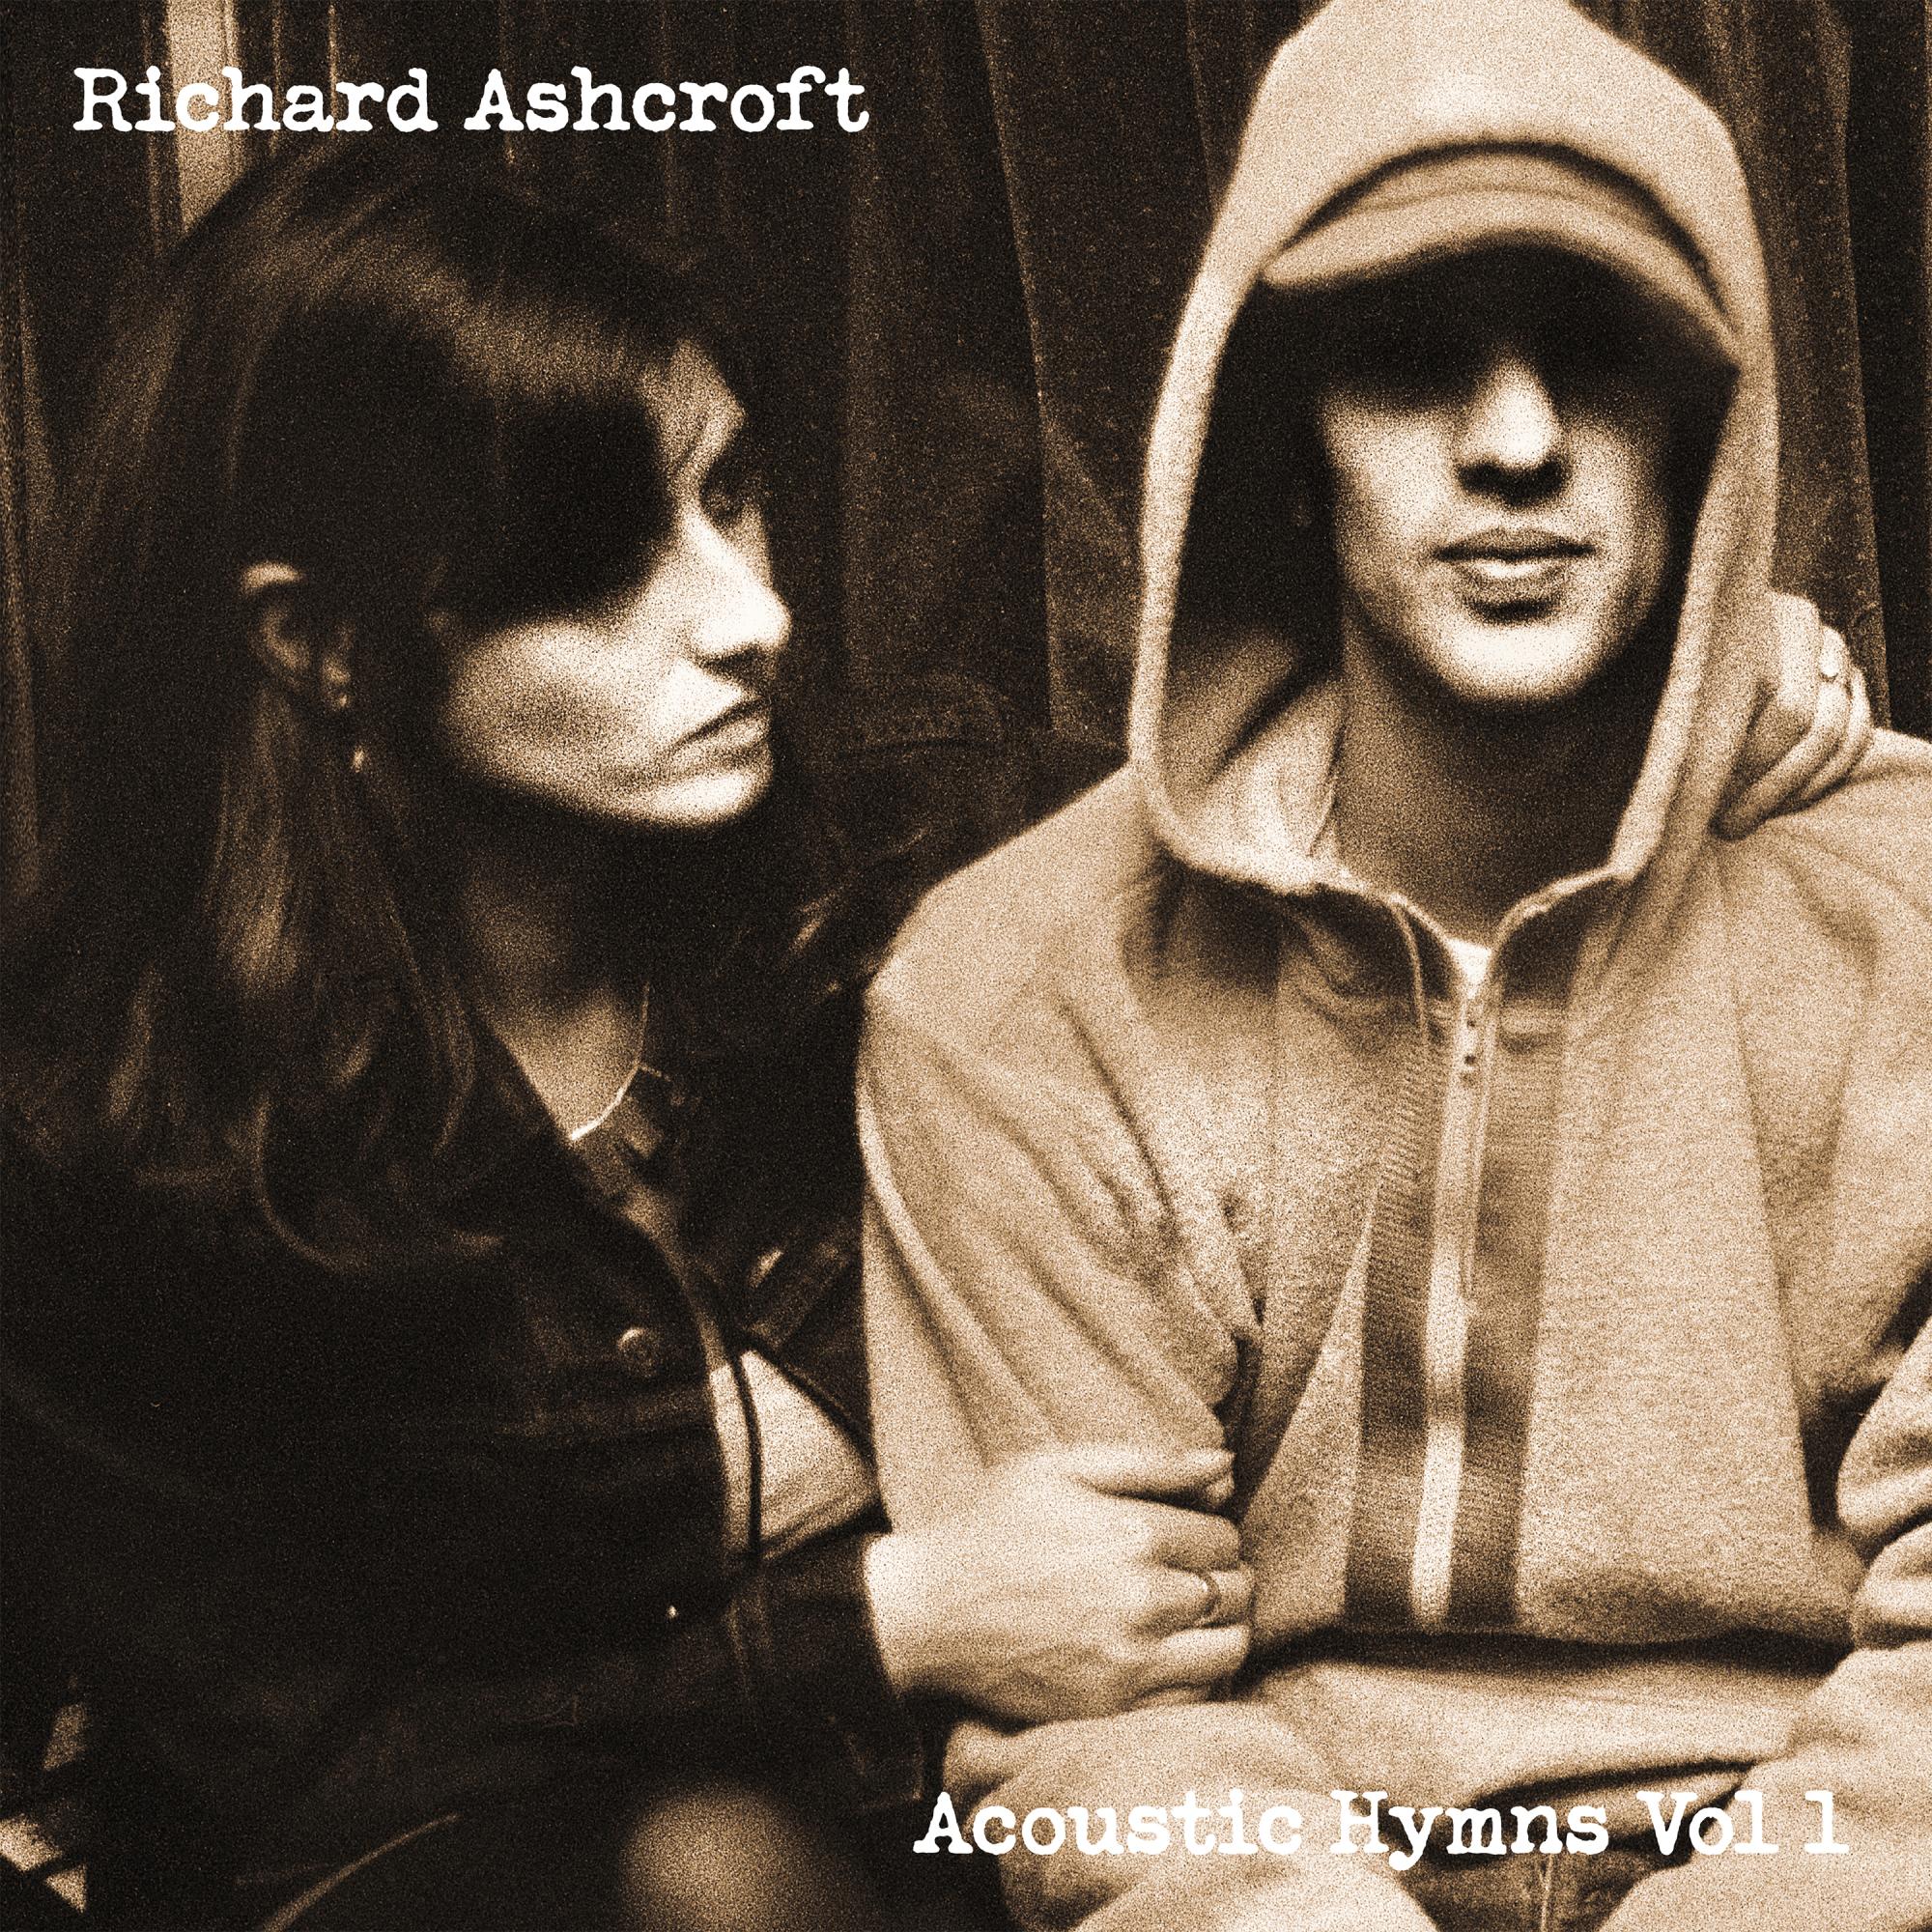 Richard Ashcroft - Acoustic Hymns Vol. 1 |  Vinyl LP | Richard Ashcroft - Acoustic Hymns Vol. 1 (LP) | Records on Vinyl